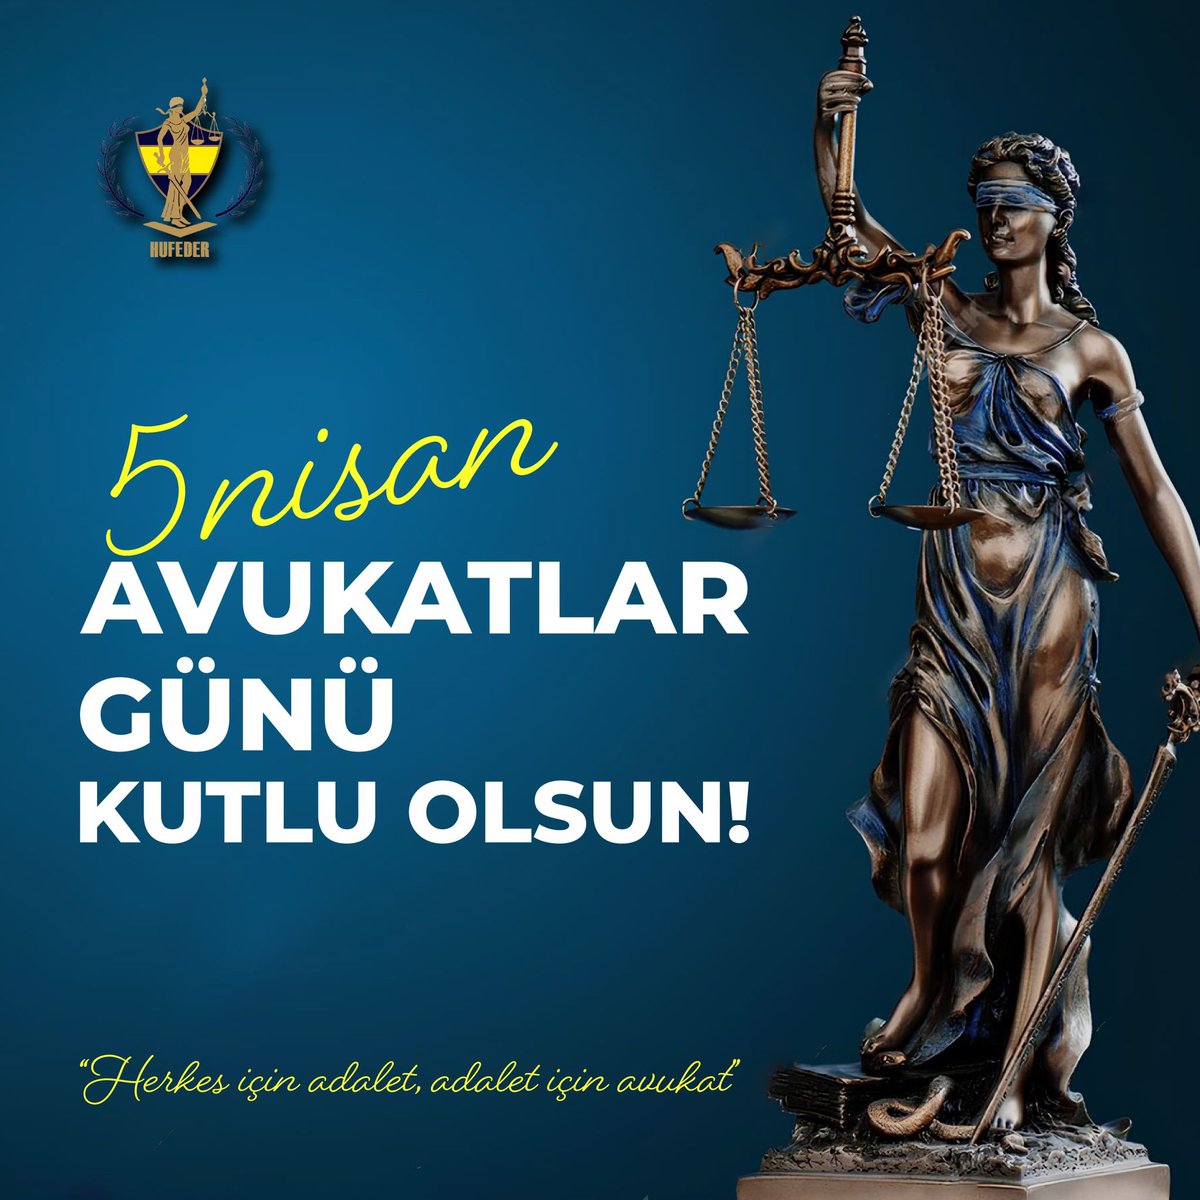 Başta üyelerimiz olmak üzere; Cumhuriyetin temel değerlerinin savunucusu, demokratik ve bağımsız hukuk devletinin güvencesi, adaletin temsilcisi tüm avukatların 5 Nisan Avukatlar Günü kutlu olsun!